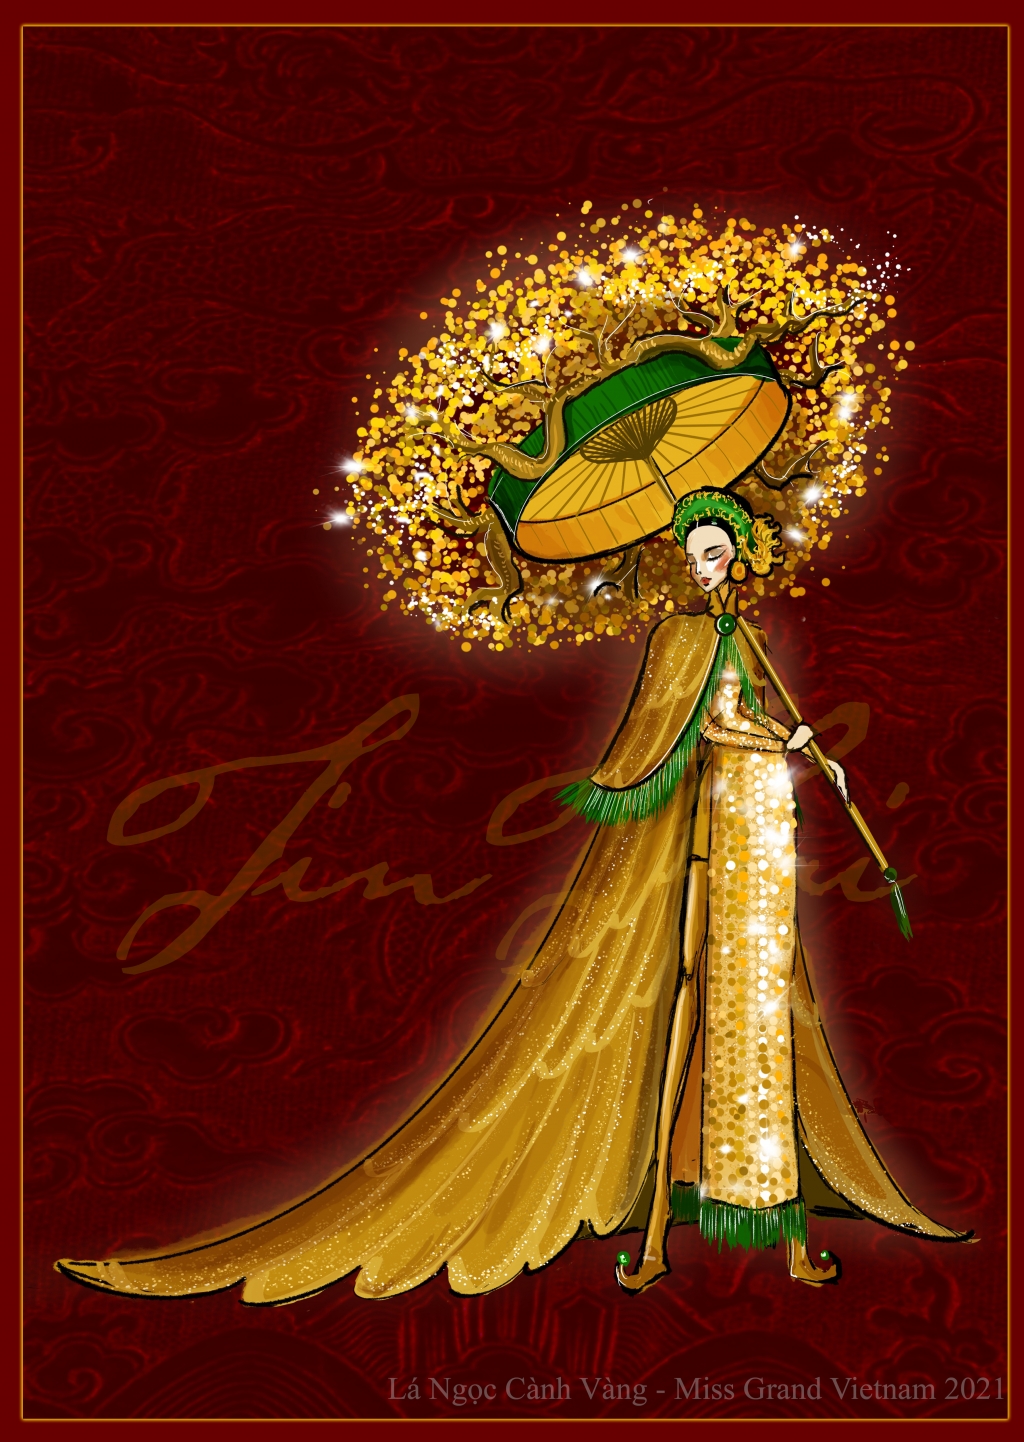 Quốc phục của Á hậu Ngọc Thảo tại Miss Grand International 2020 sẽ mang tên “Lá ngọc cành vàng”